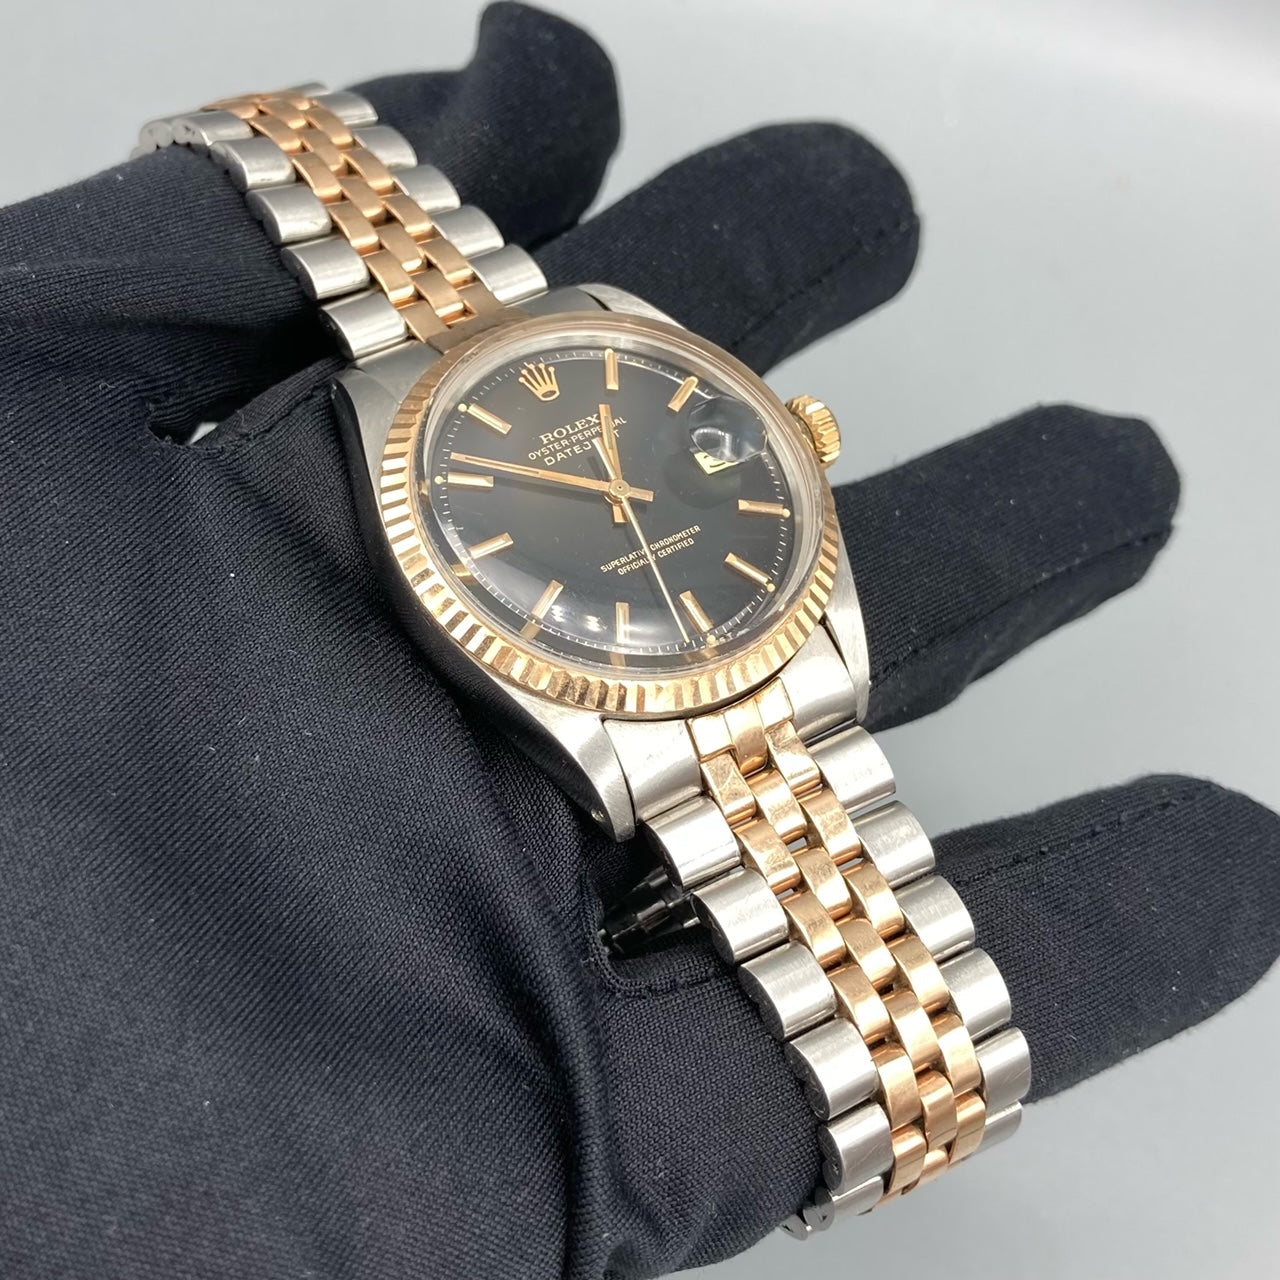 Montre Rolex Datejust Vintage des années 1970 en acier et or rose - 1601